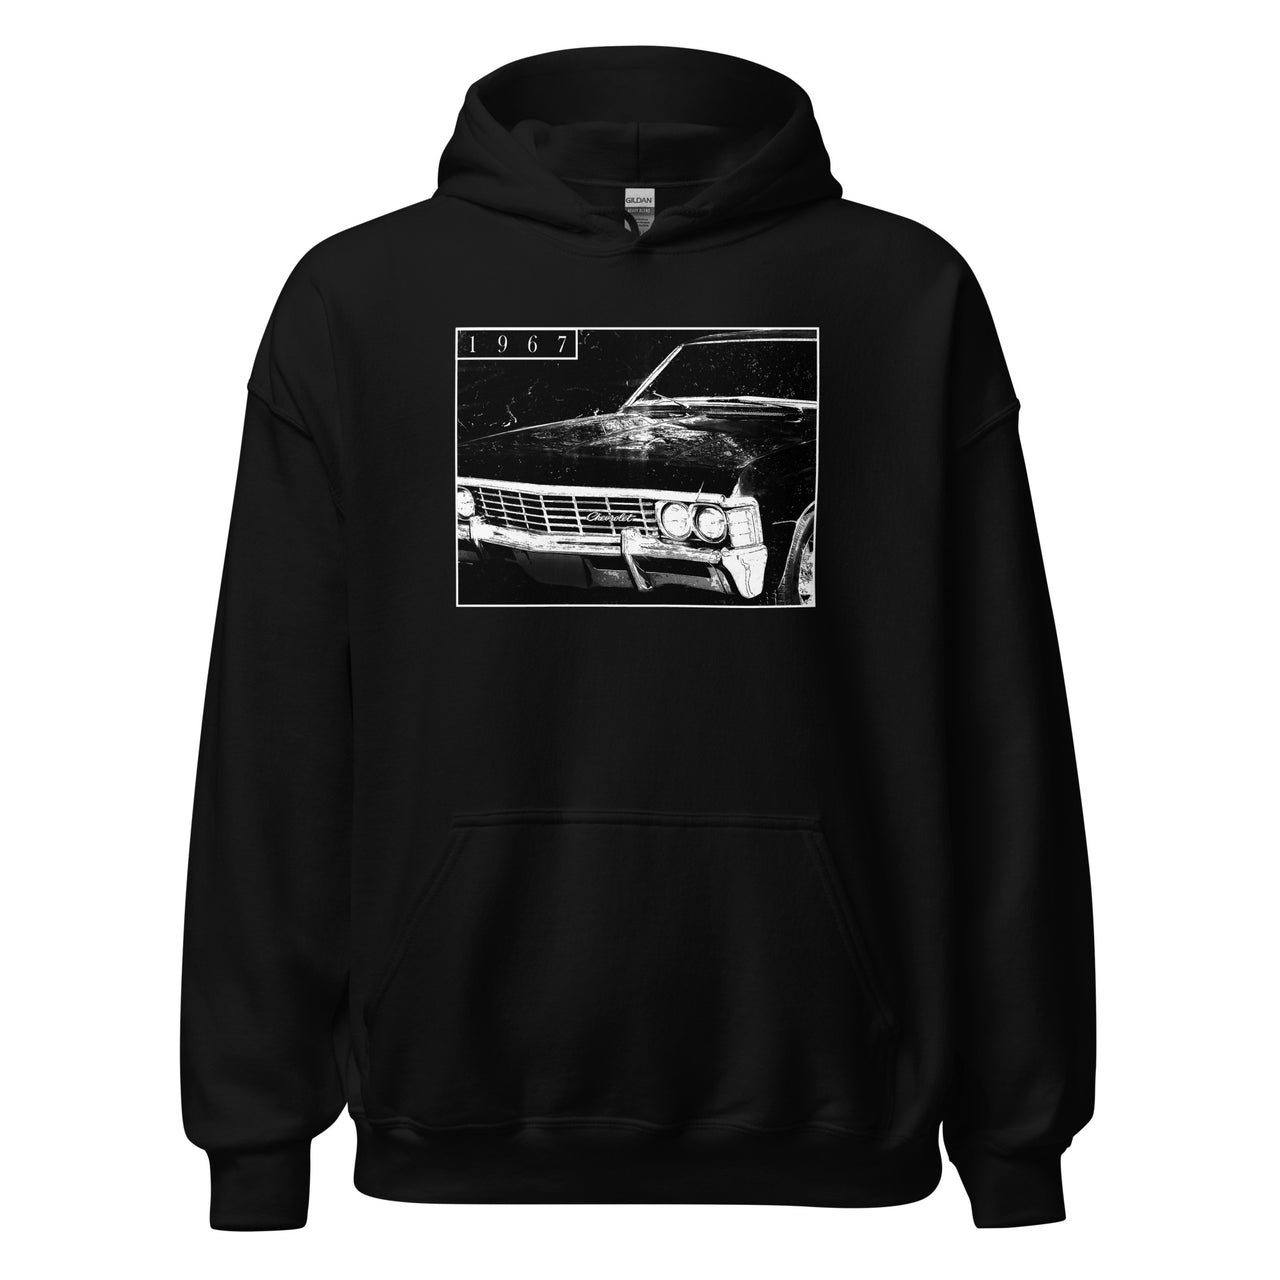 1967 Impala hoodie sweatshirt in black